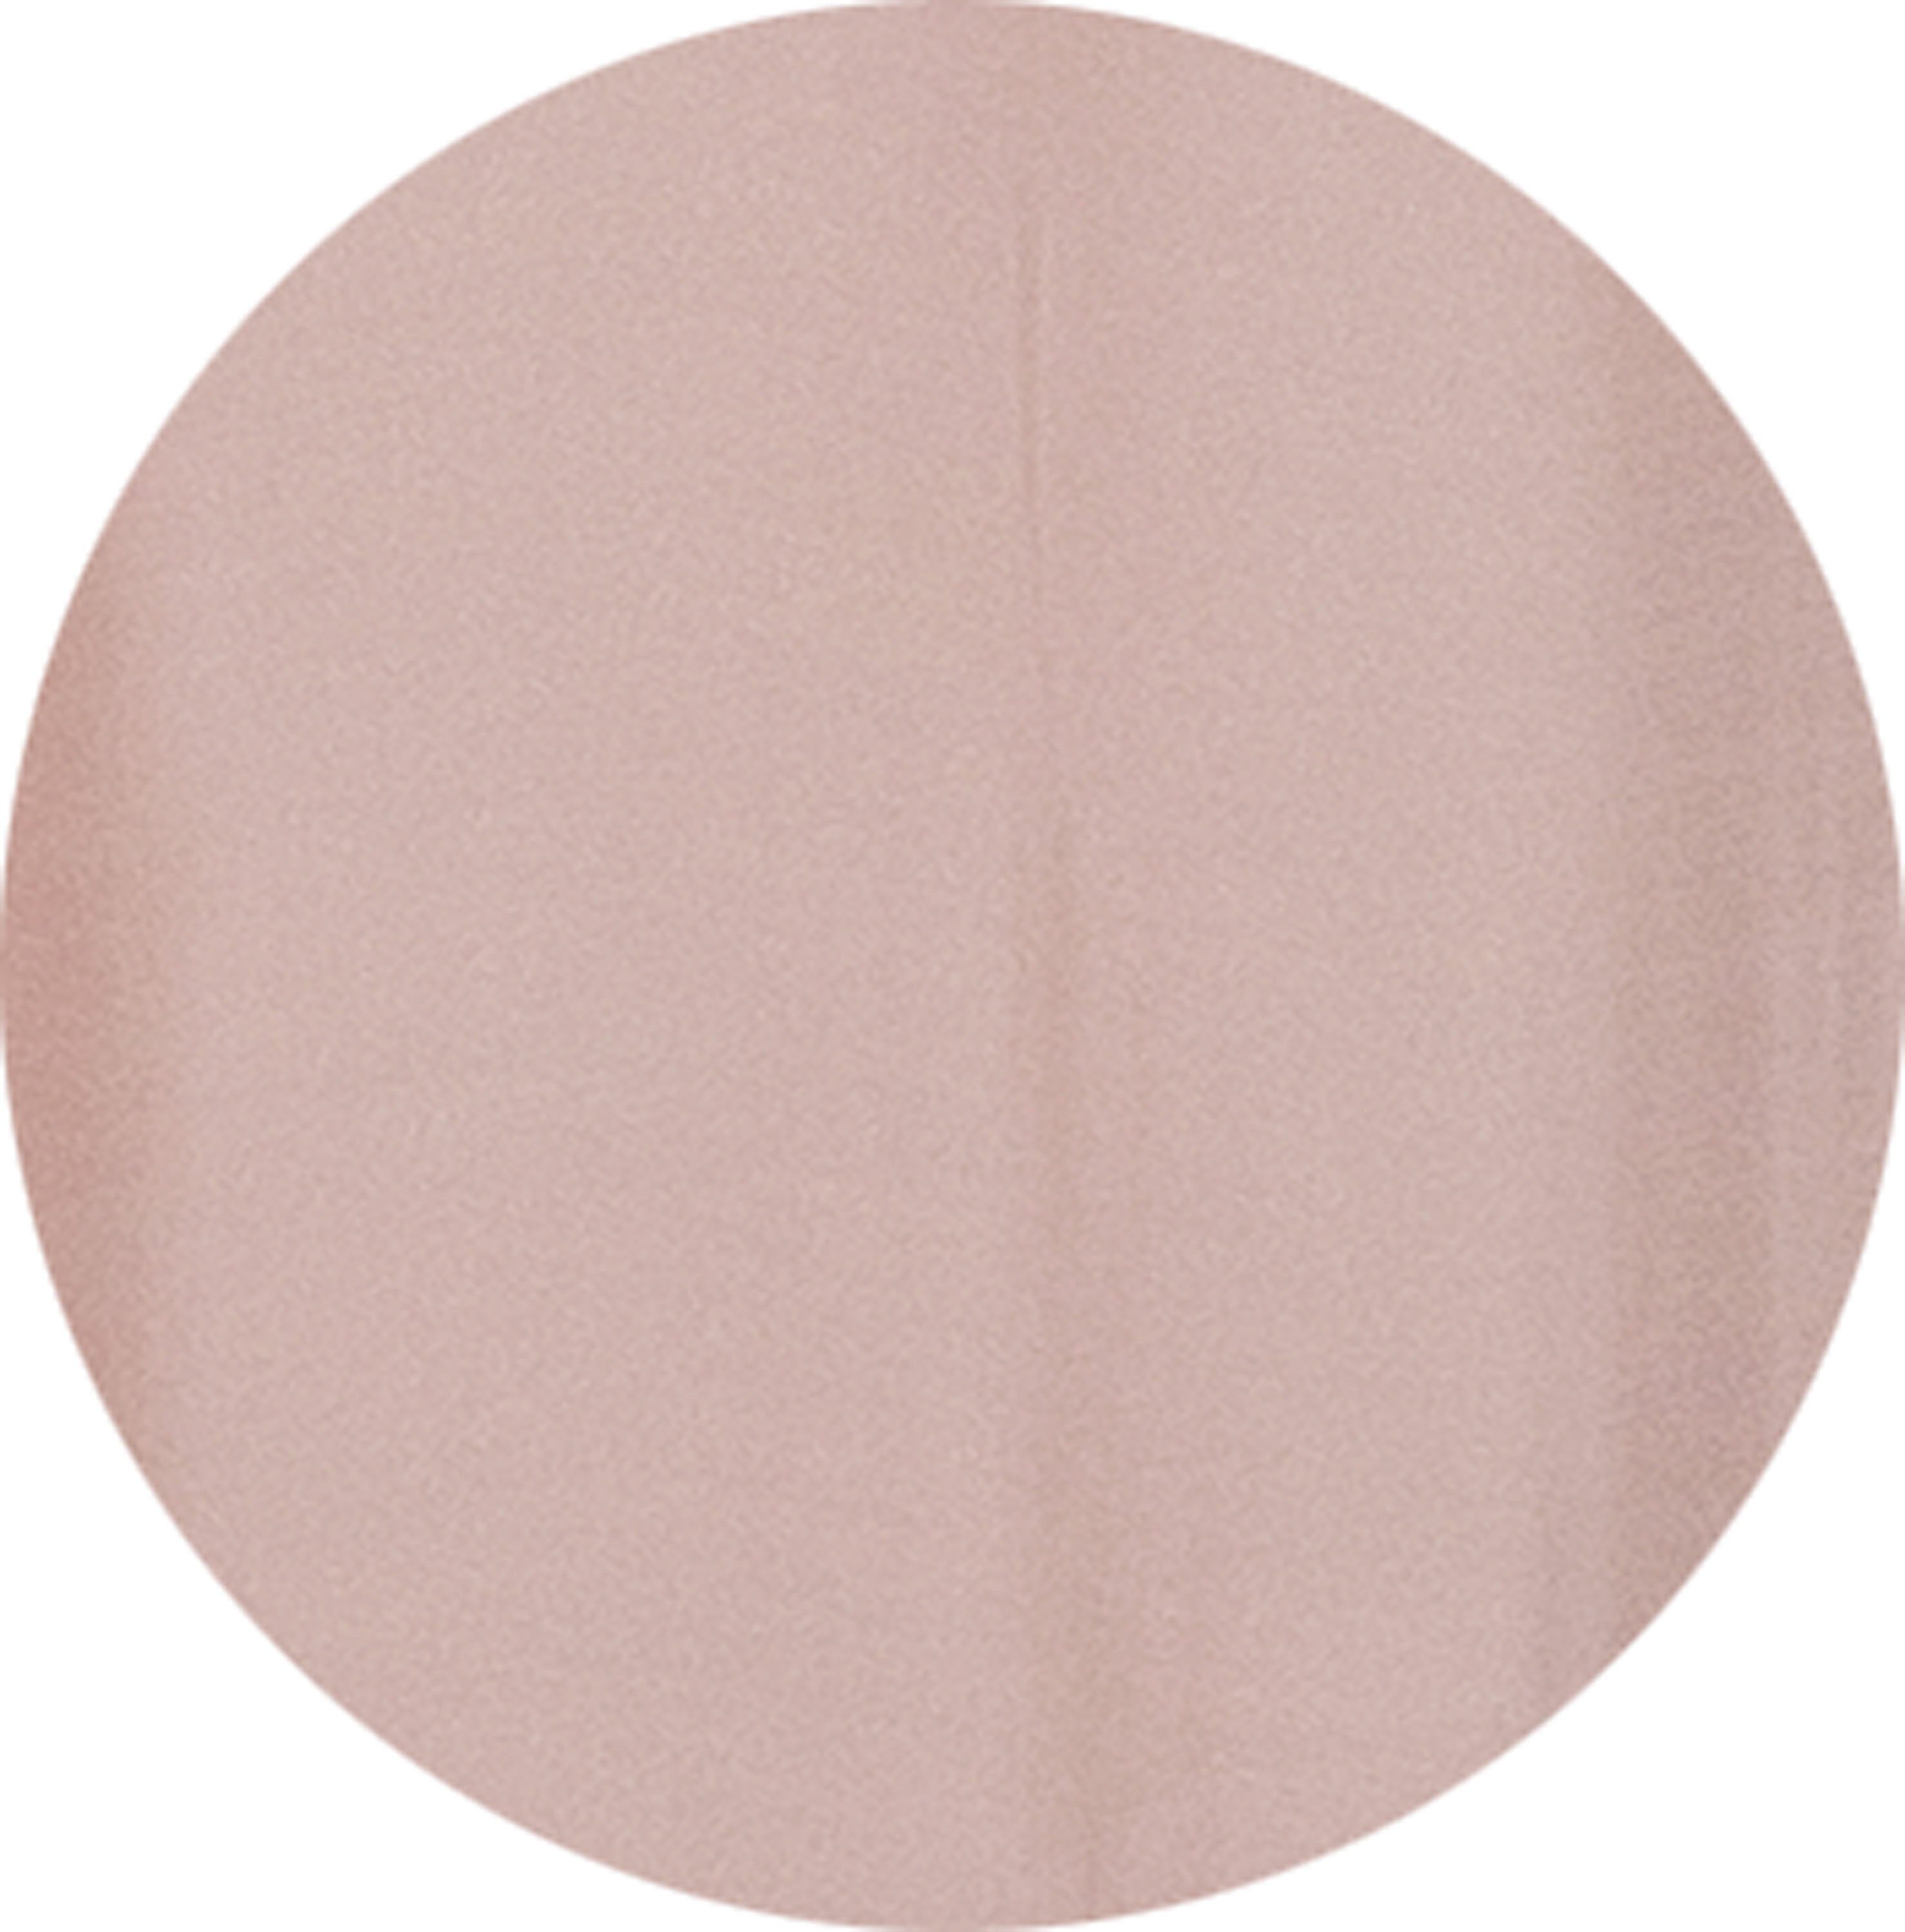 Jacquard, Vorhang (1 Look St), zeilosen, WOHNEN-Kollektion, unifarbenen Multifunktionsband halbtransparent, SCHÖNER Solid, im rosa/rosé